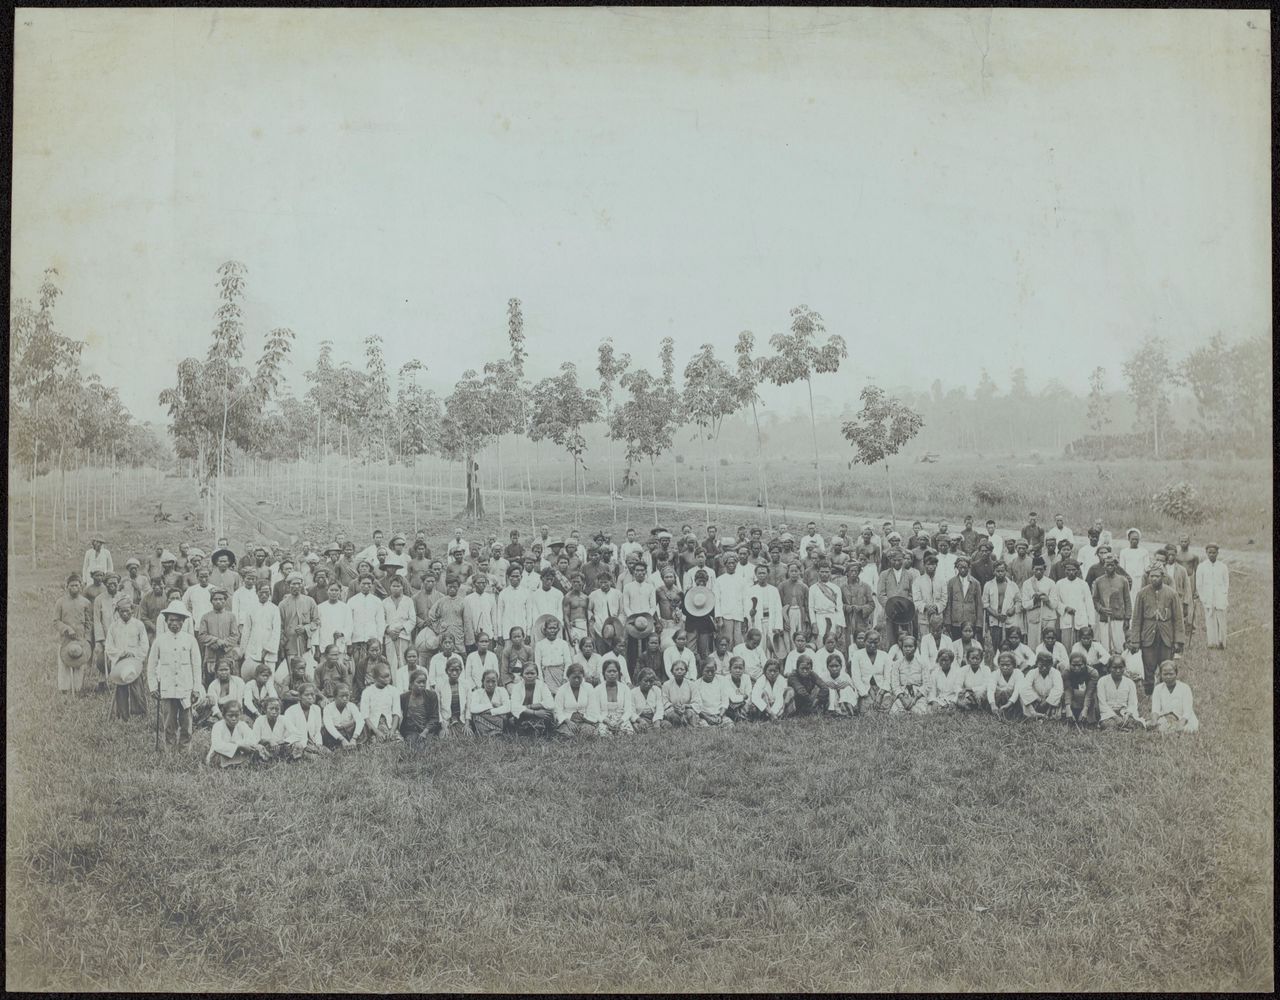 Groepsfoto van de mannelijke en vrouwelijke arbeiders van de rubberplantage Balang Seragam in Deli, Oost-Sumatra, 1880